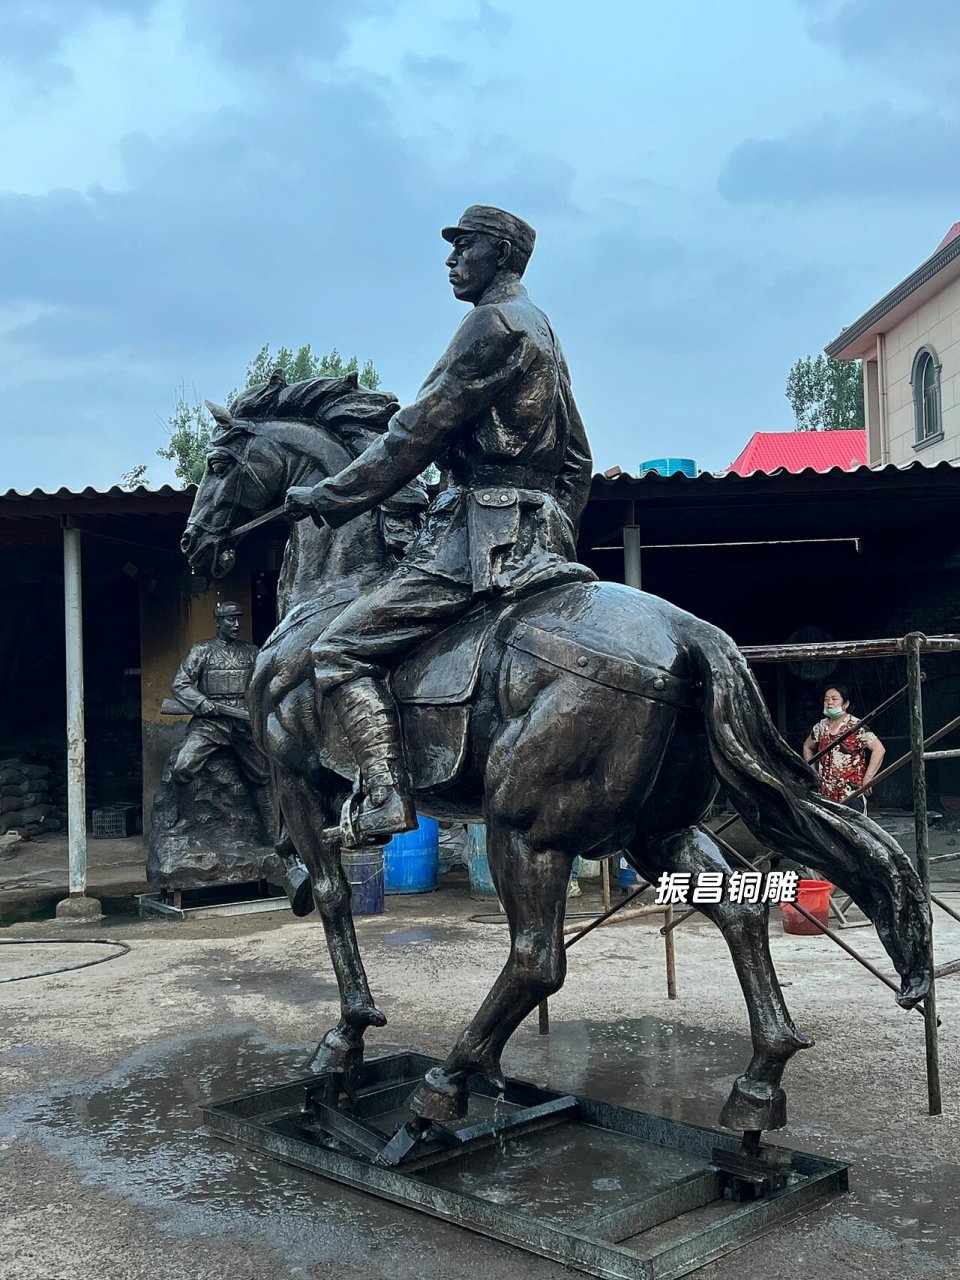 红军骑马人物雕塑作品 人物雕塑的矗立是为了发扬我国的美德和装饰